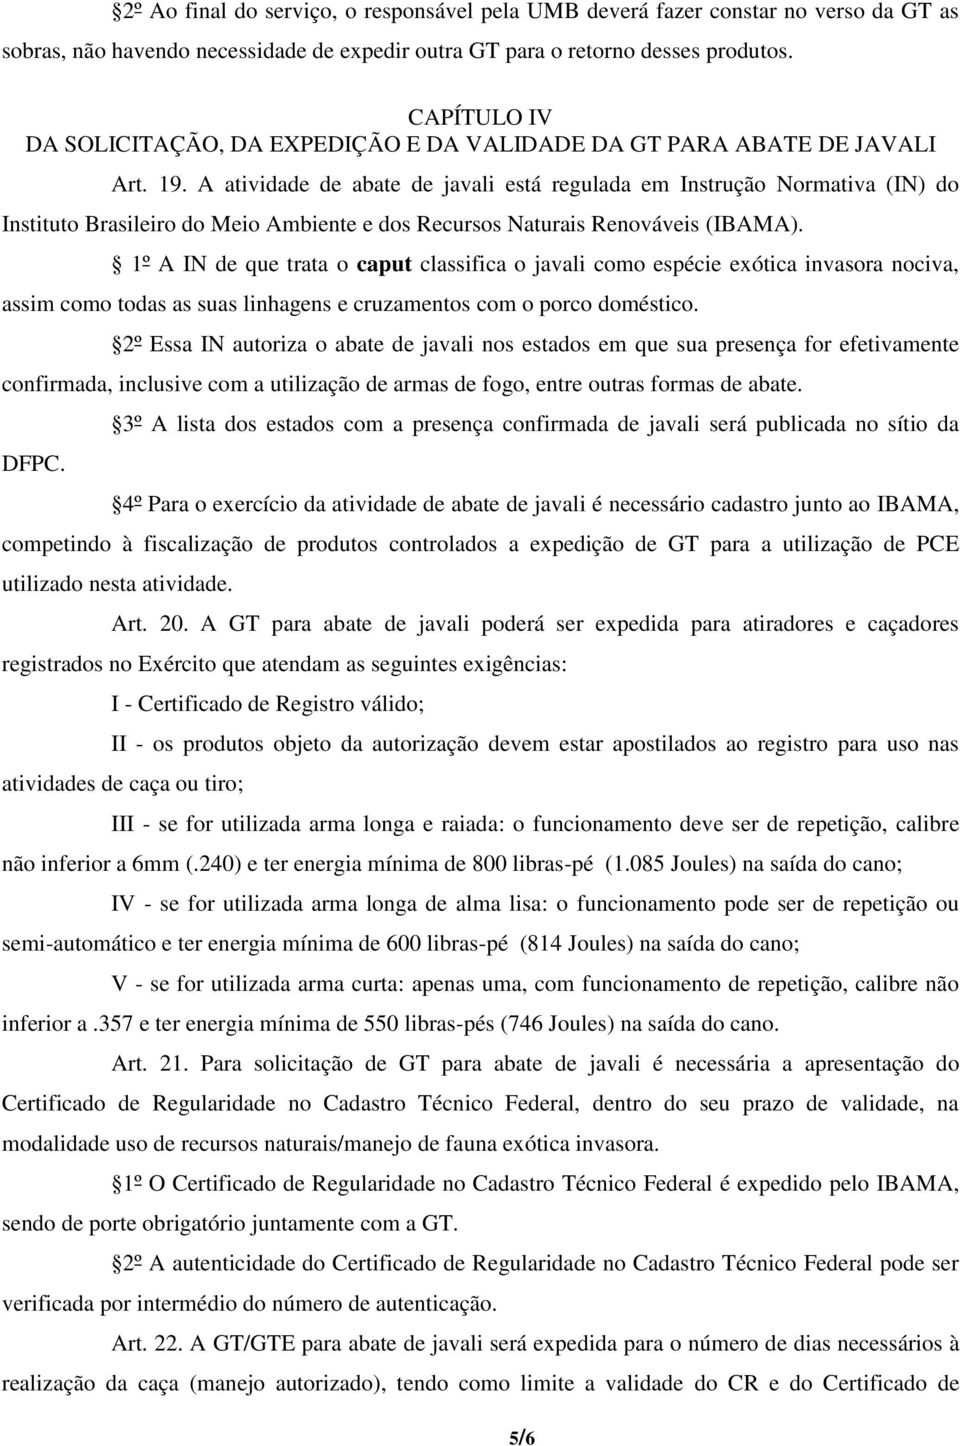 A atividade de abate de javali está regulada em Instrução Normativa (IN) do Instituto Brasileiro do Meio Ambiente e dos Recursos Naturais Renováveis (IBAMA).